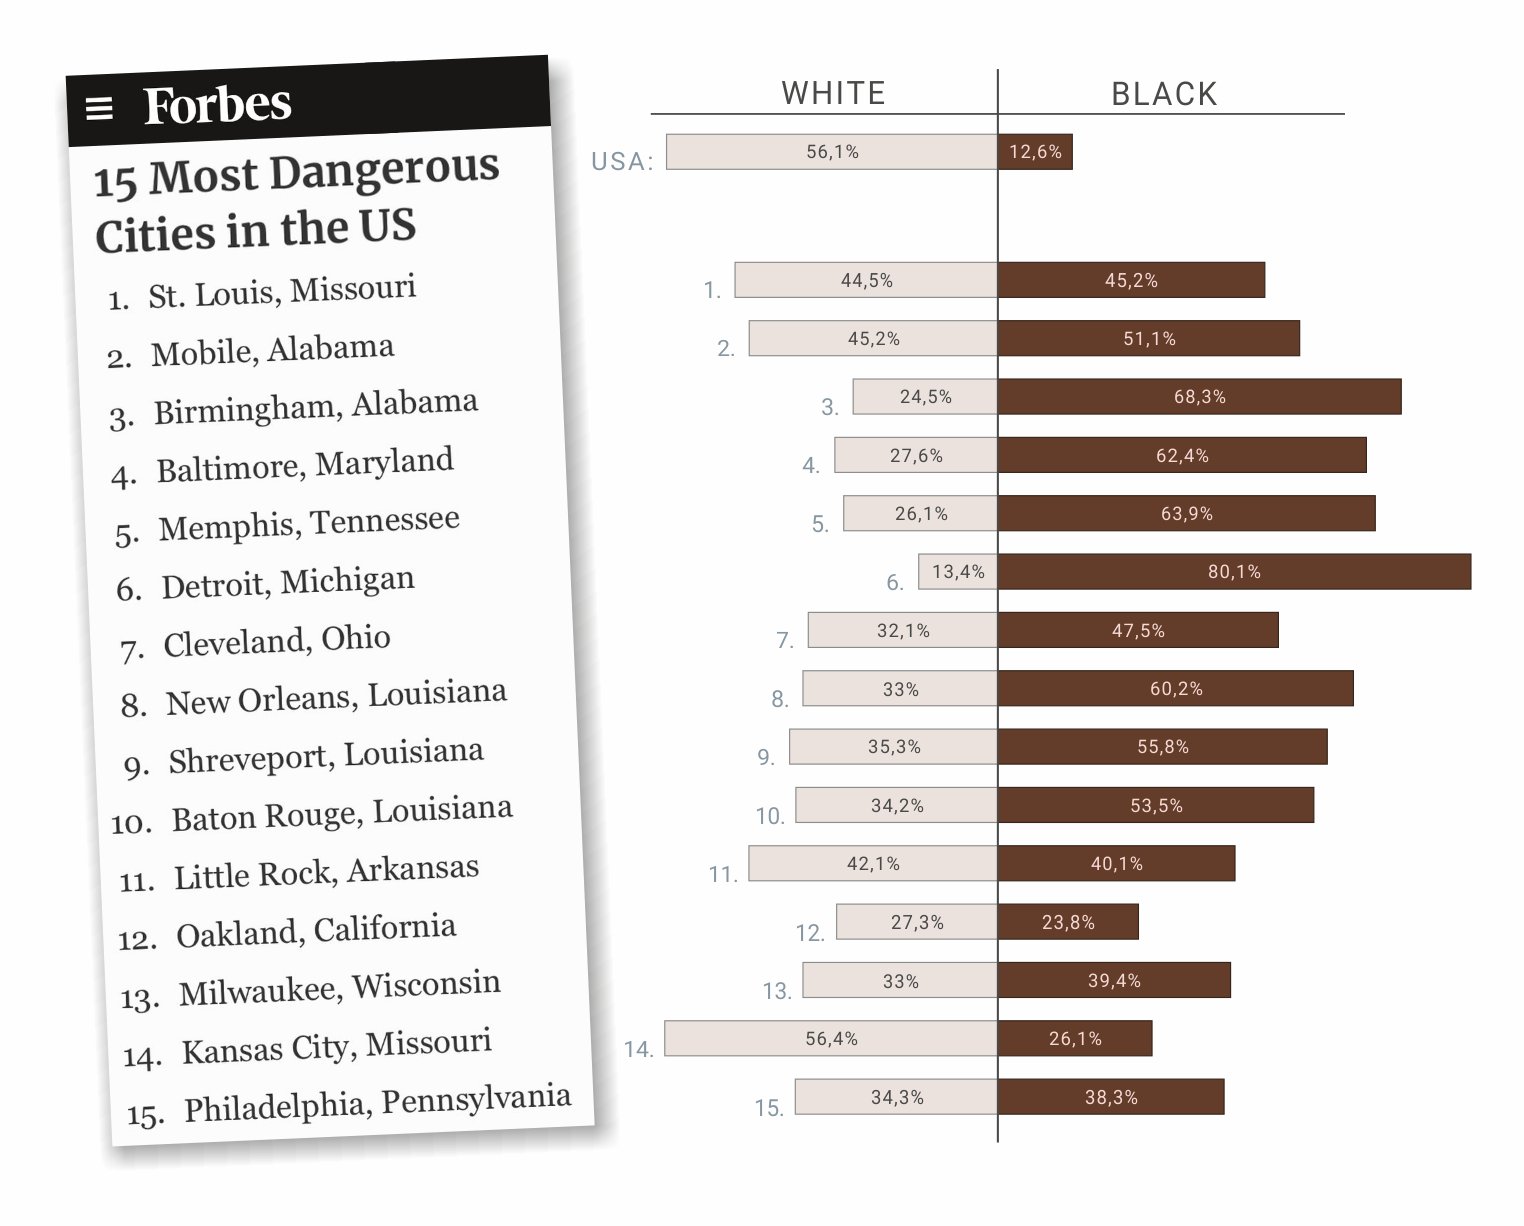 Top15 najbardziej niebezpiecznych miast w USA z podziałem na ludność czarną i białą, Forbes